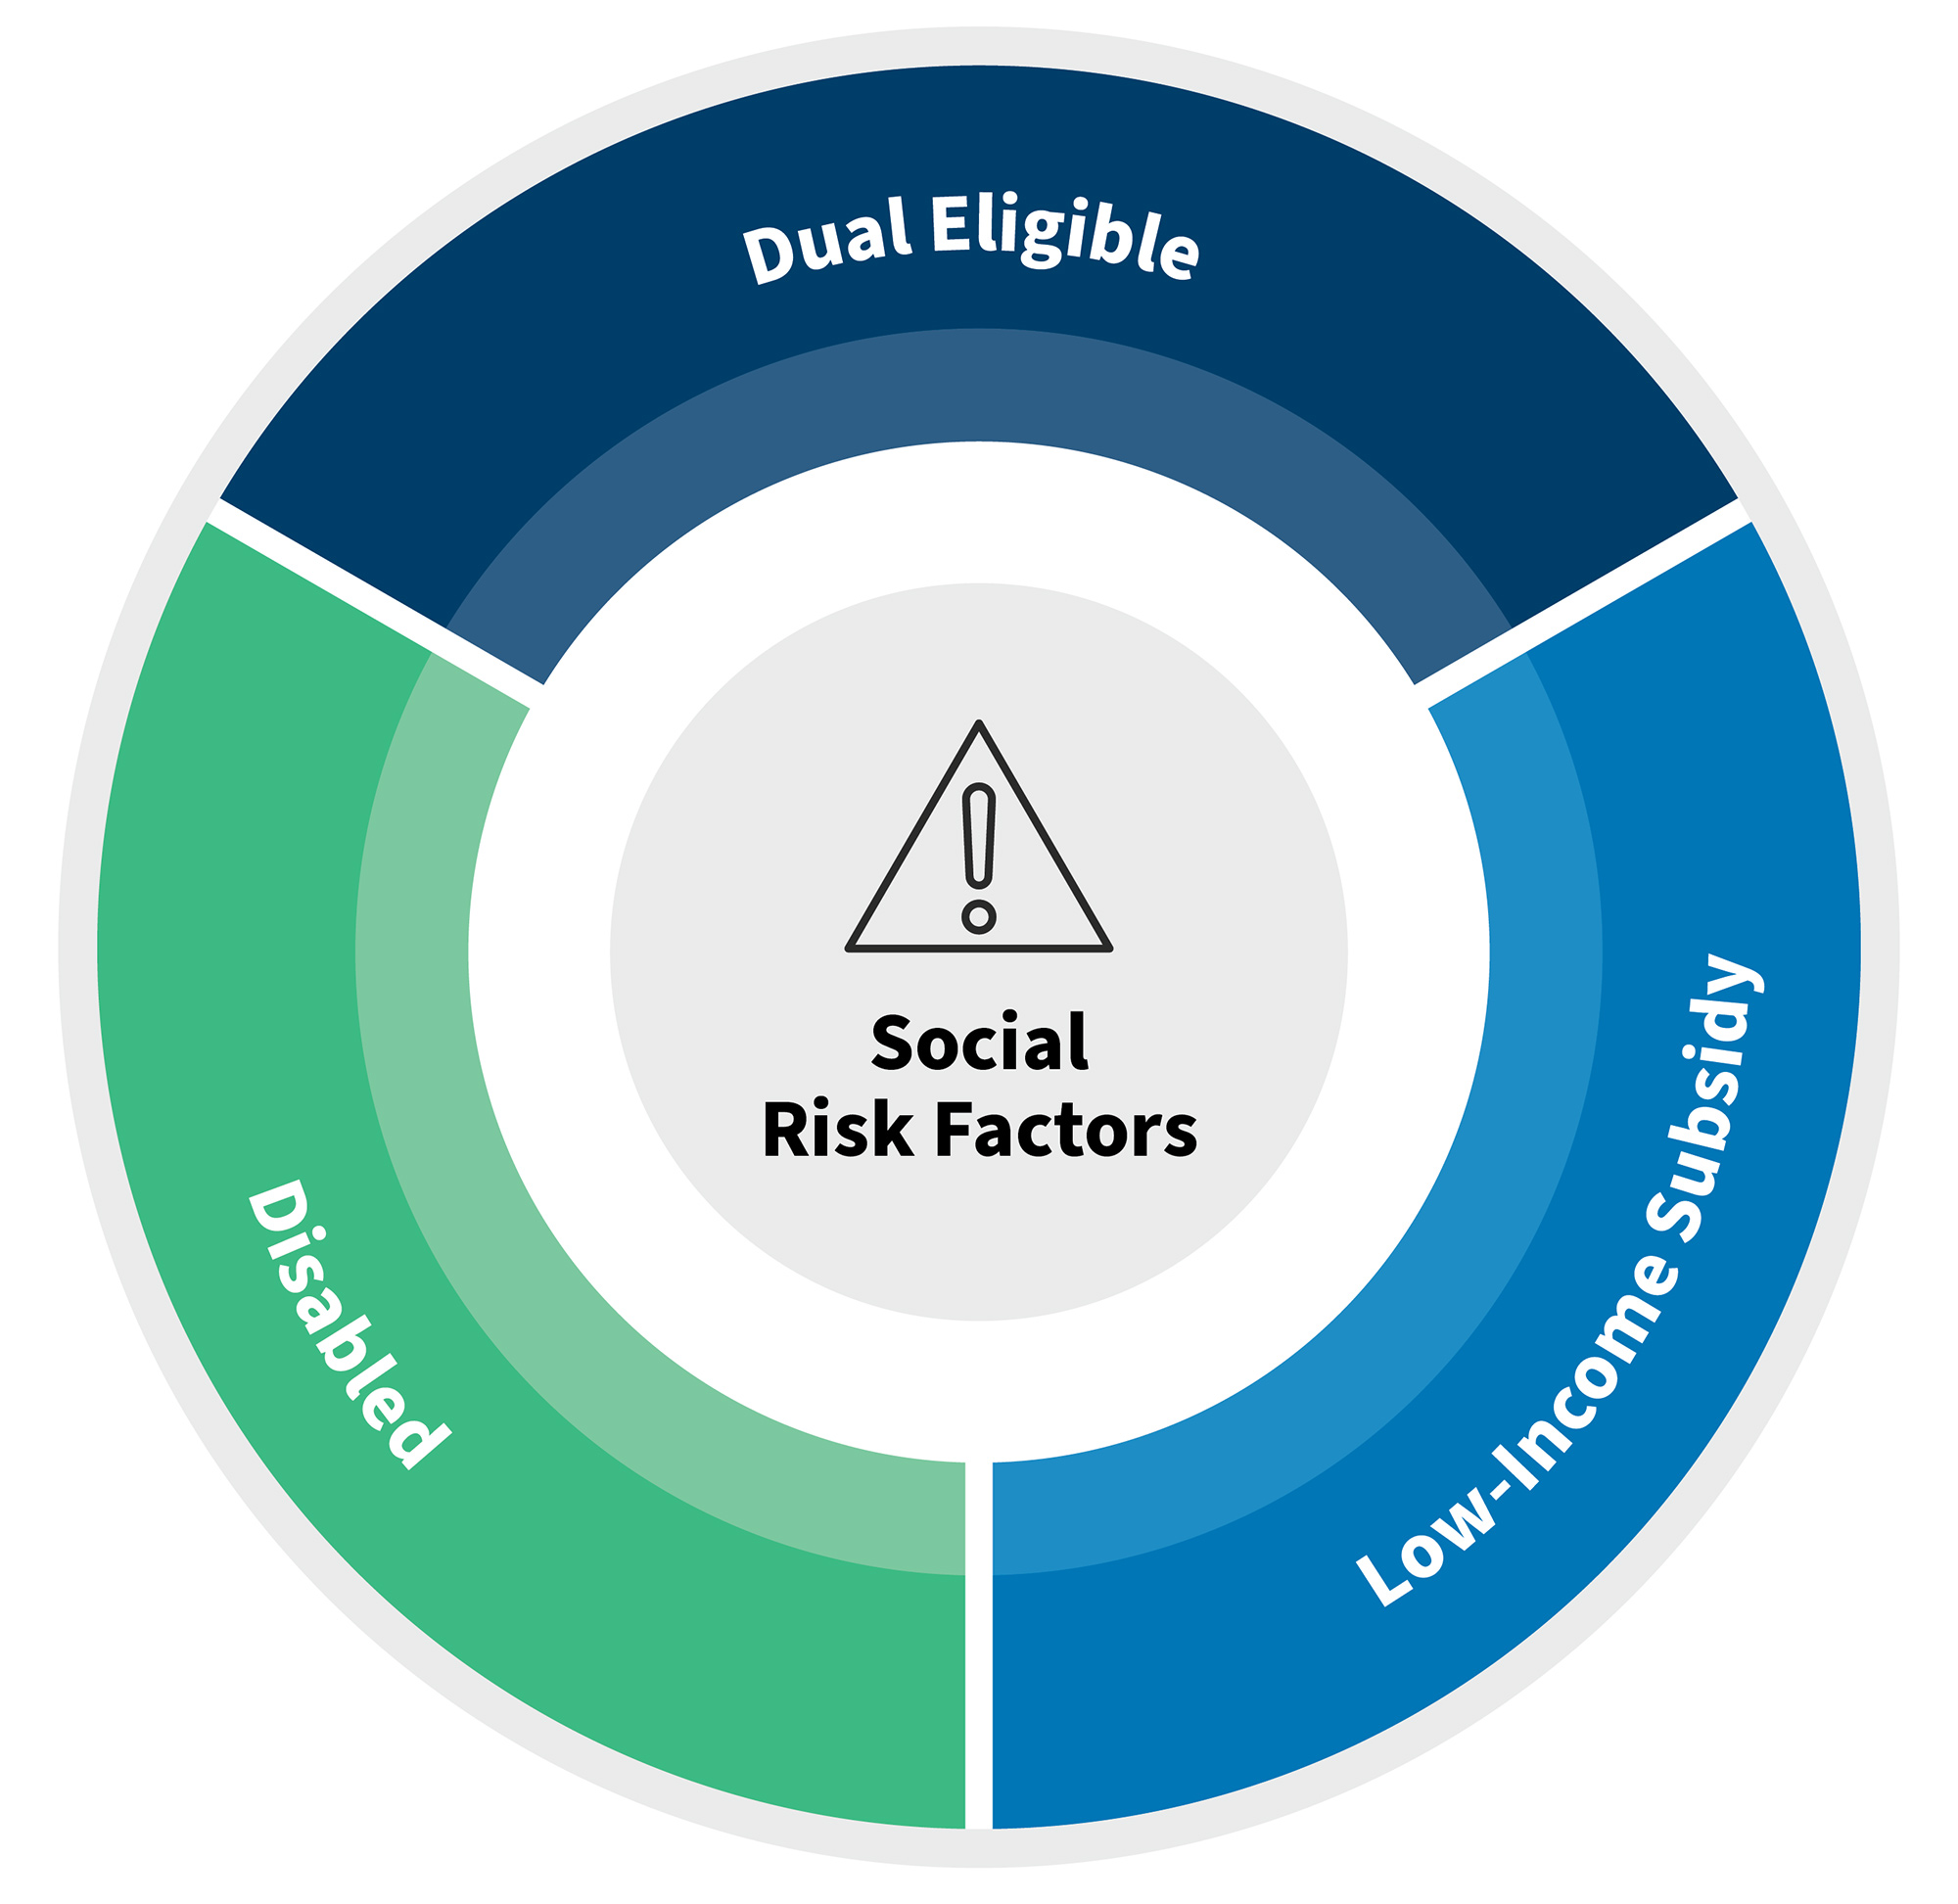 Social risk factors